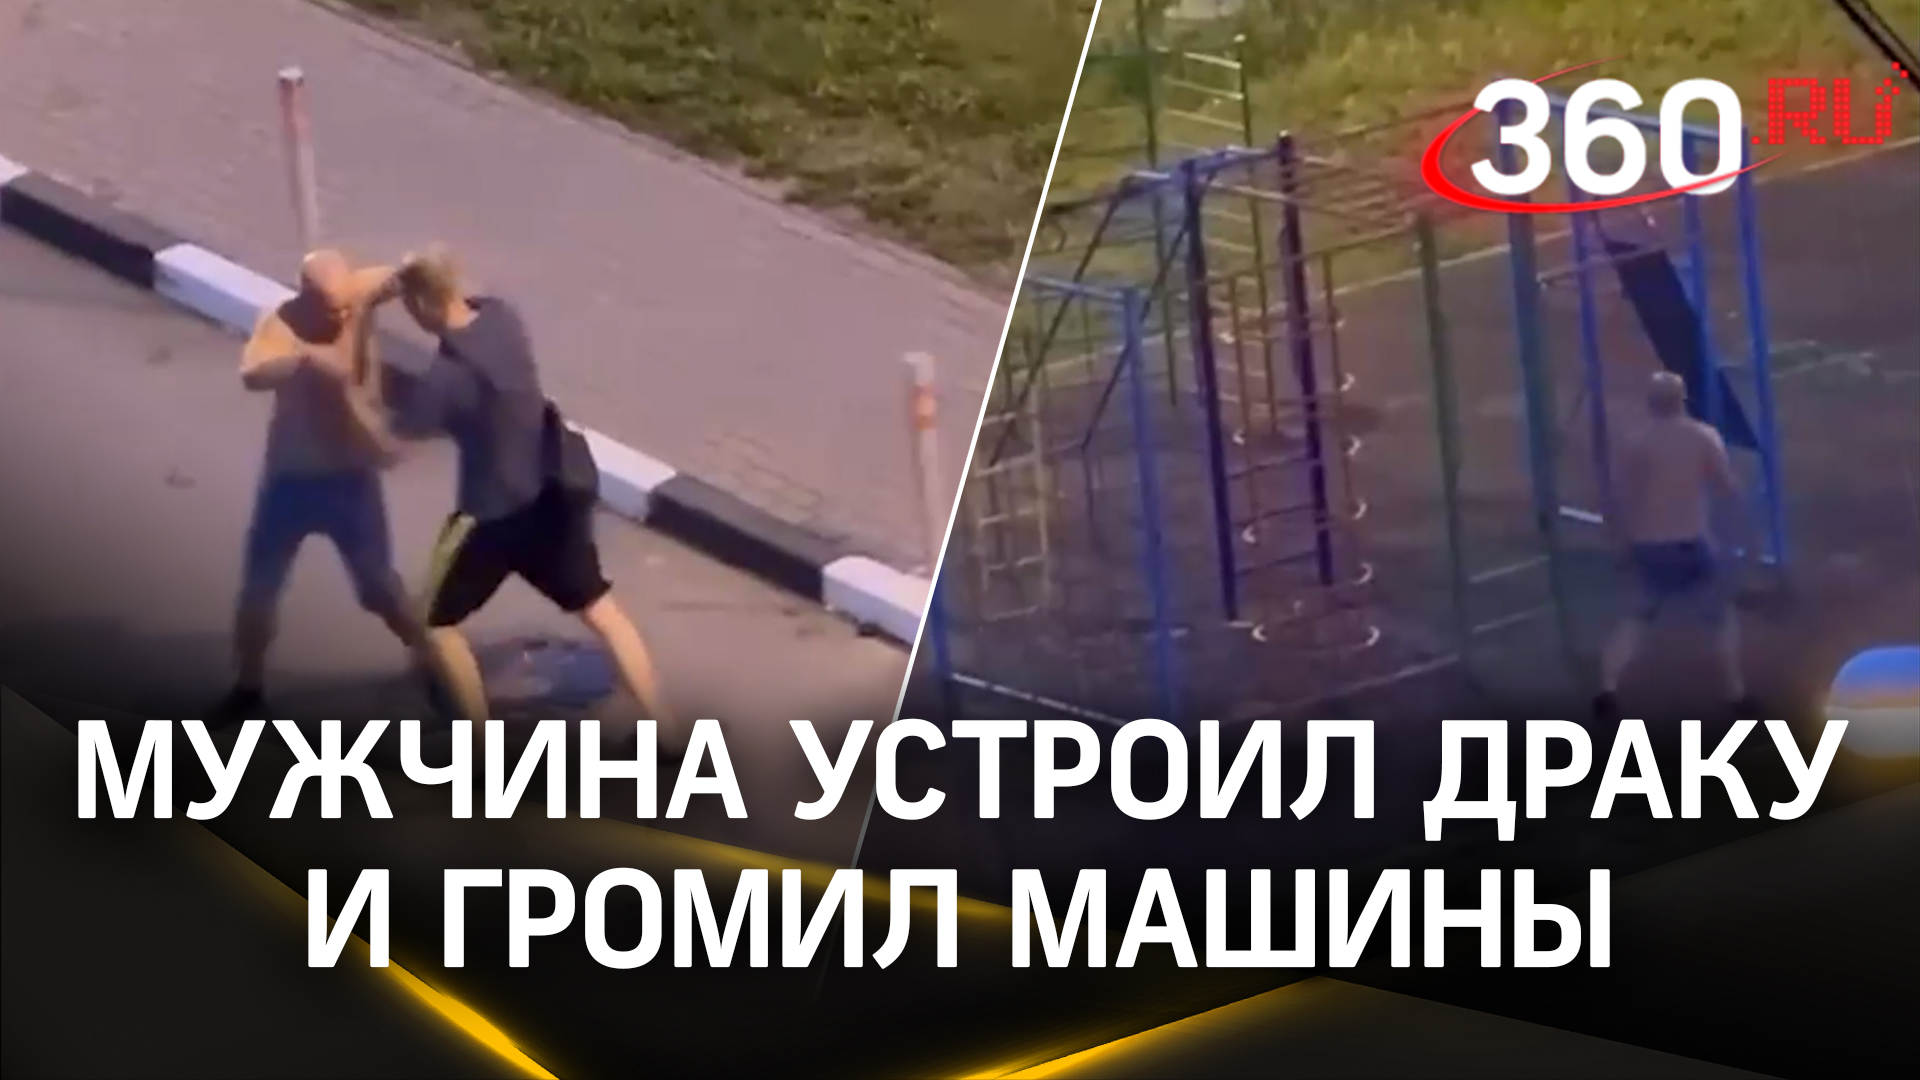 Видео: топлес-неадеквата успокаивают шокером в Дзержинске. Дрался, бил машины и звал полицию